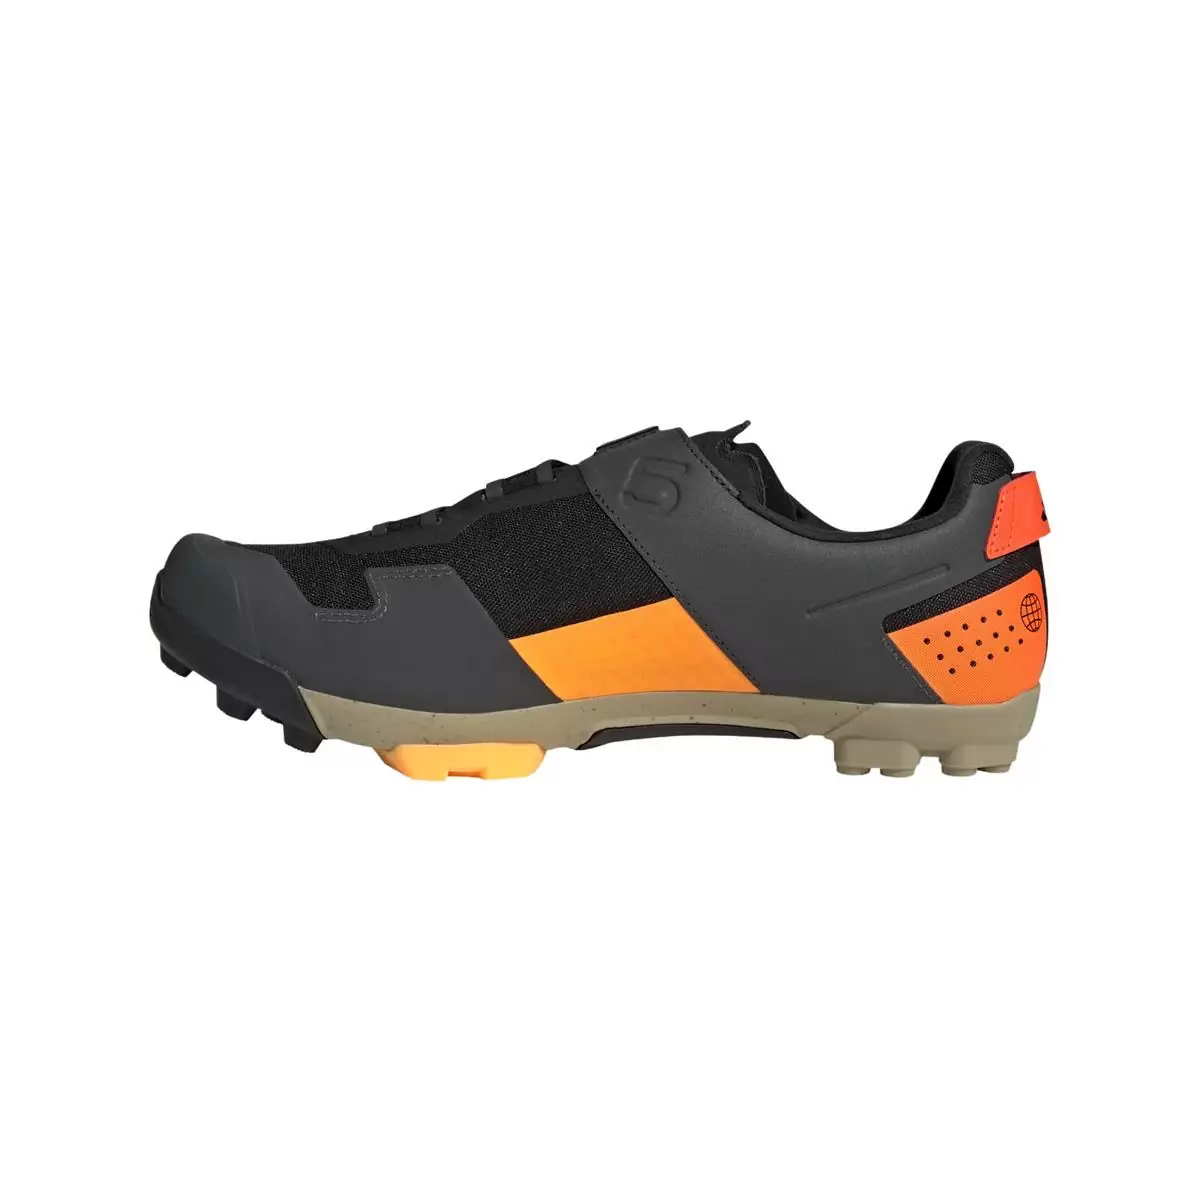 Clip 5.10 Kestrel Boa MTB Shoes Black/Orange Size 44.5 #2